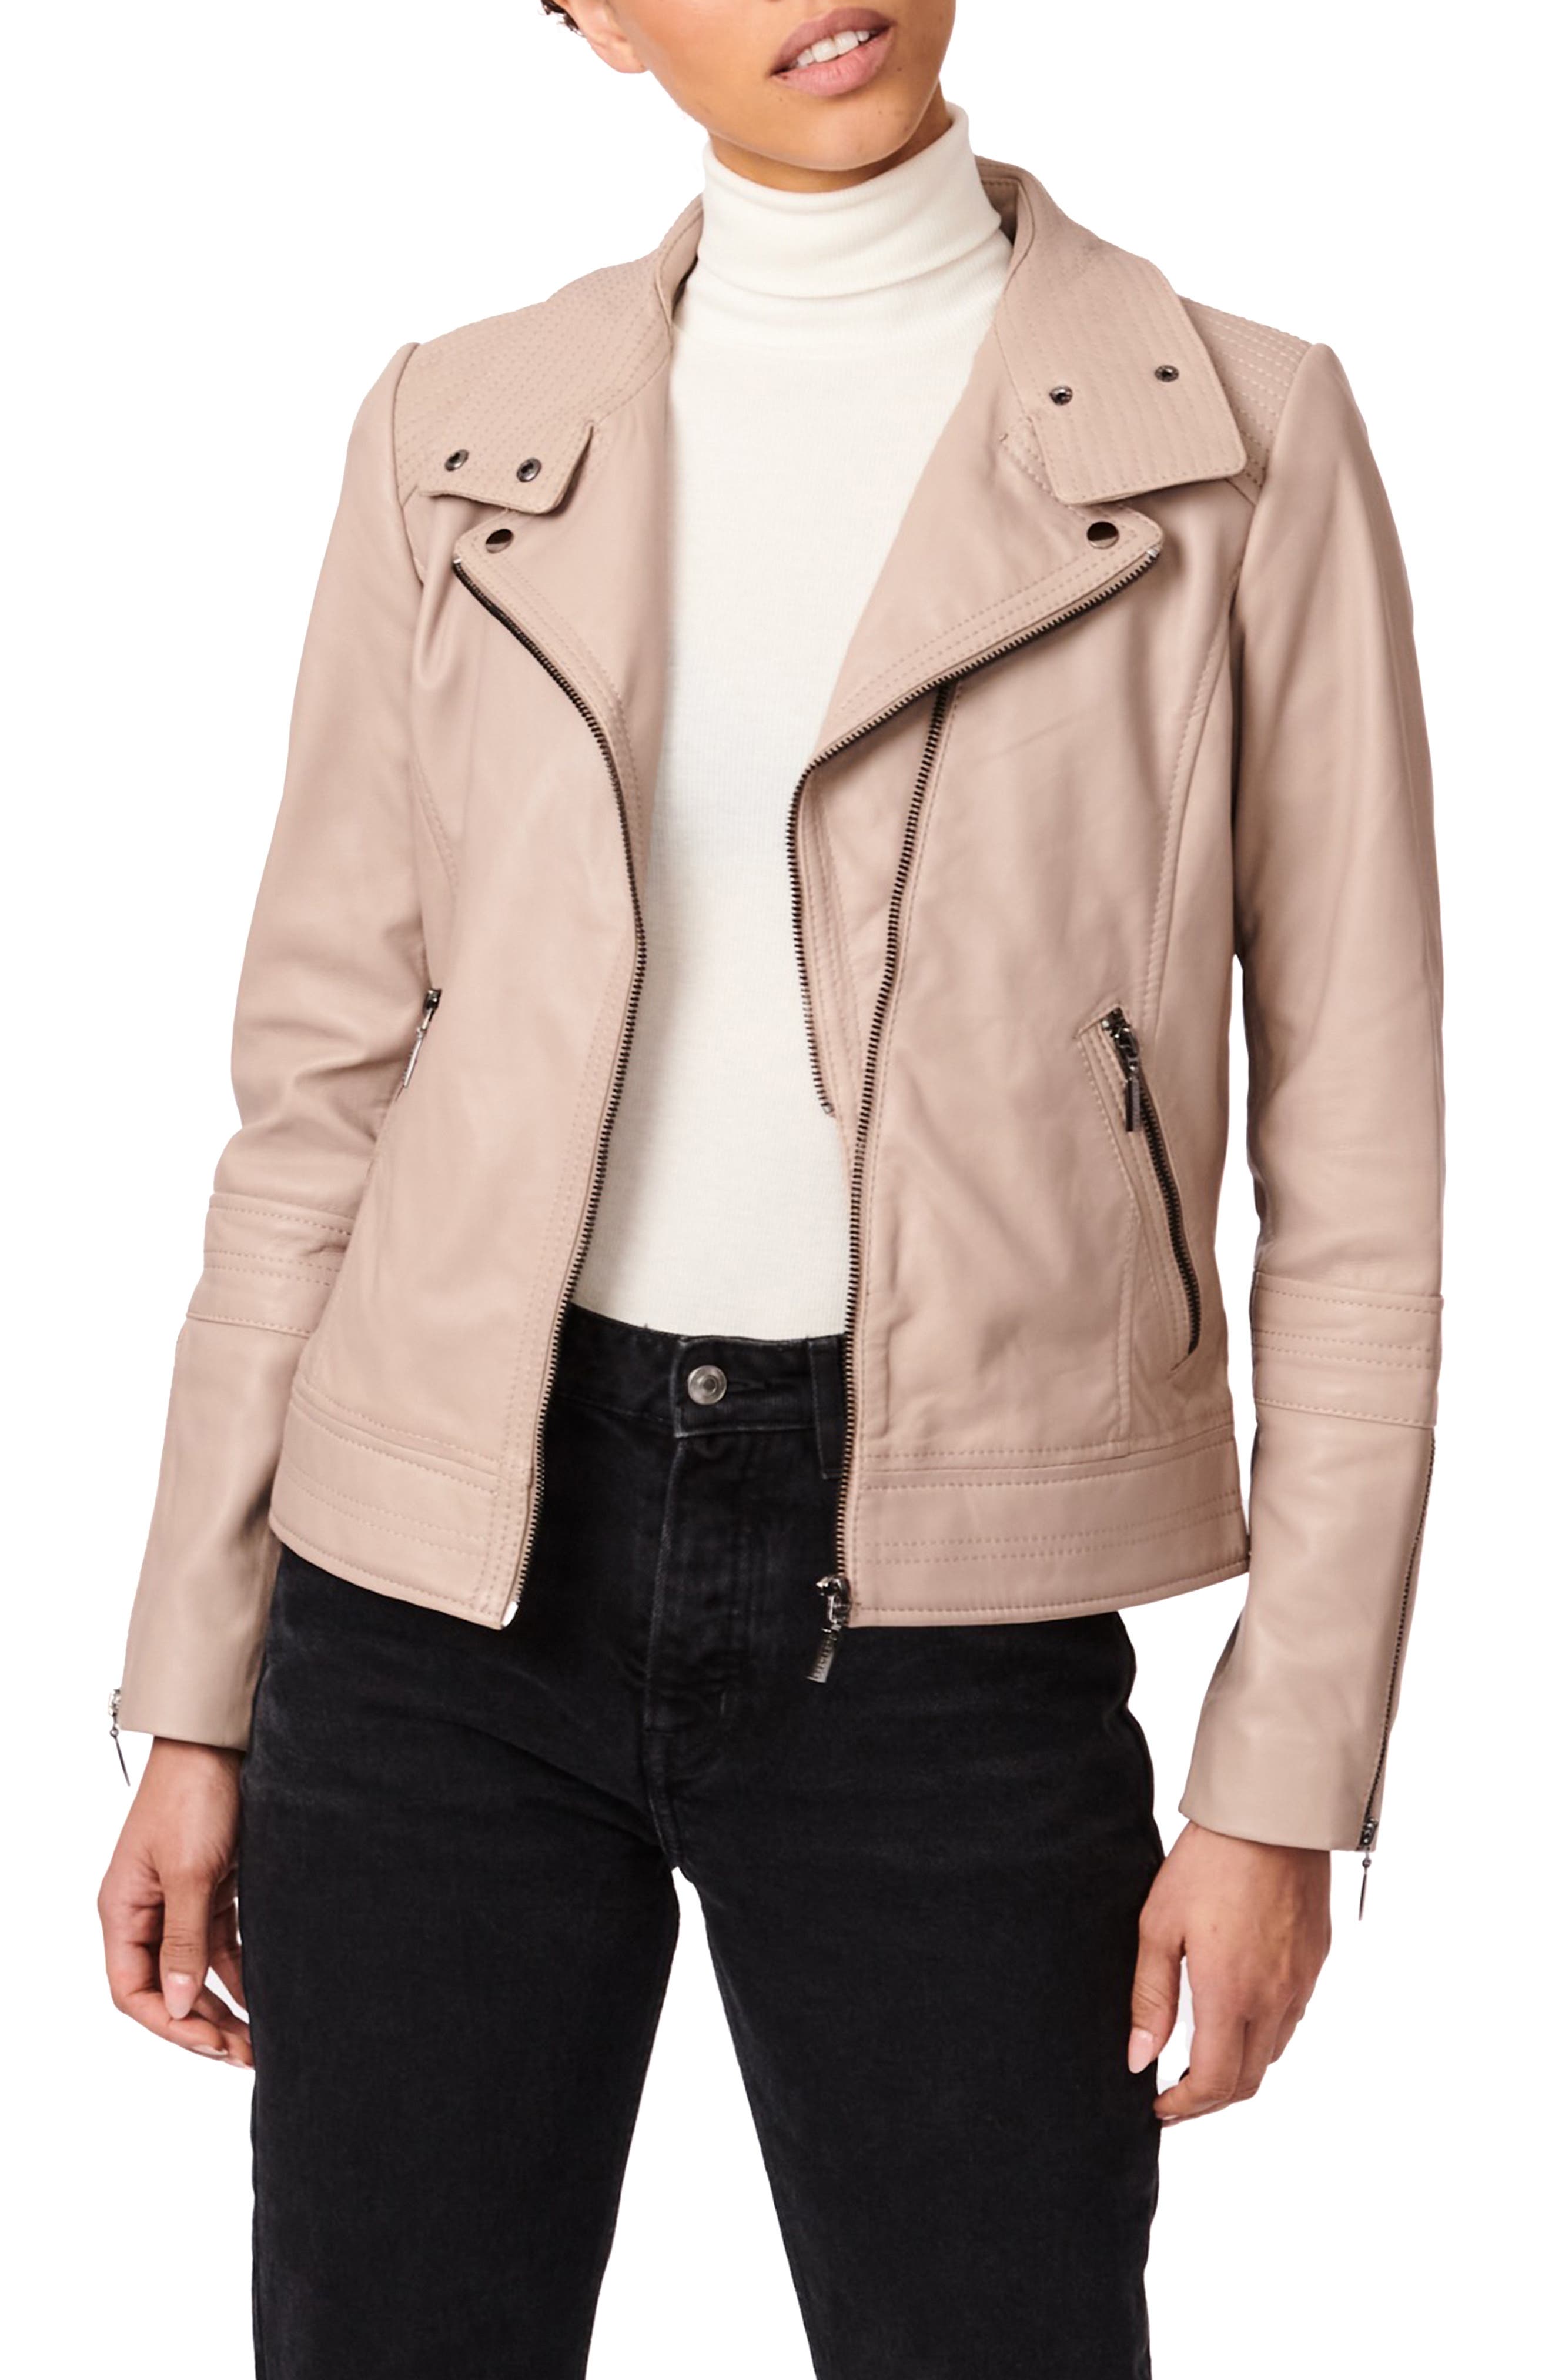 Women's Faux Leather Jacket Cropped Trench Coat Blazer Oversized Bomber Moto Faux Leather Coats & Jackets Anoraks